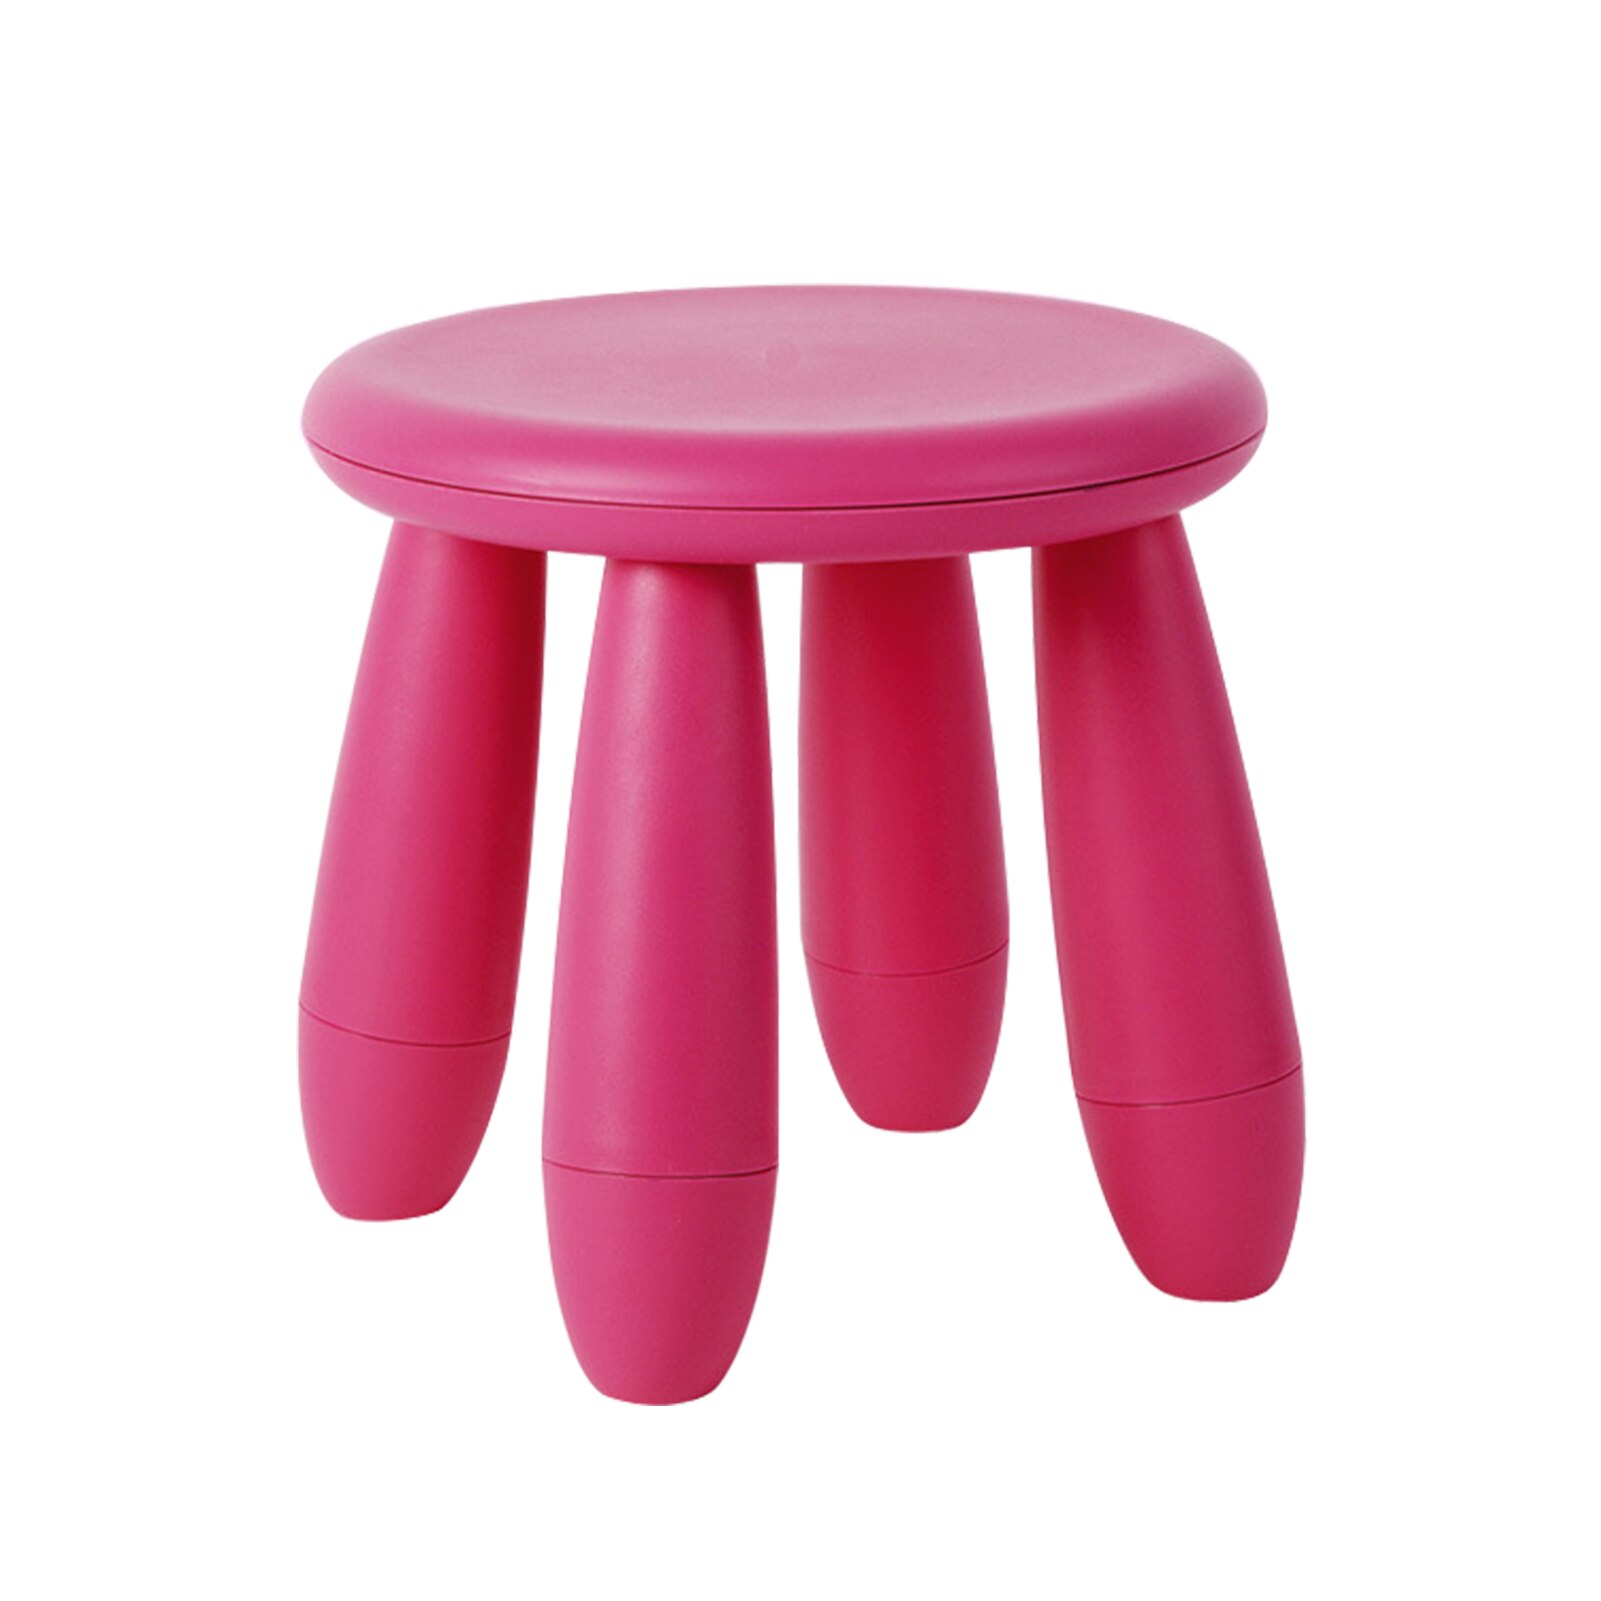 Pp mini bærbare møbler glat stue fortykket børnehave aftagelig børn skammel skridsikker rundt sæde hjem solid: Rosenrød